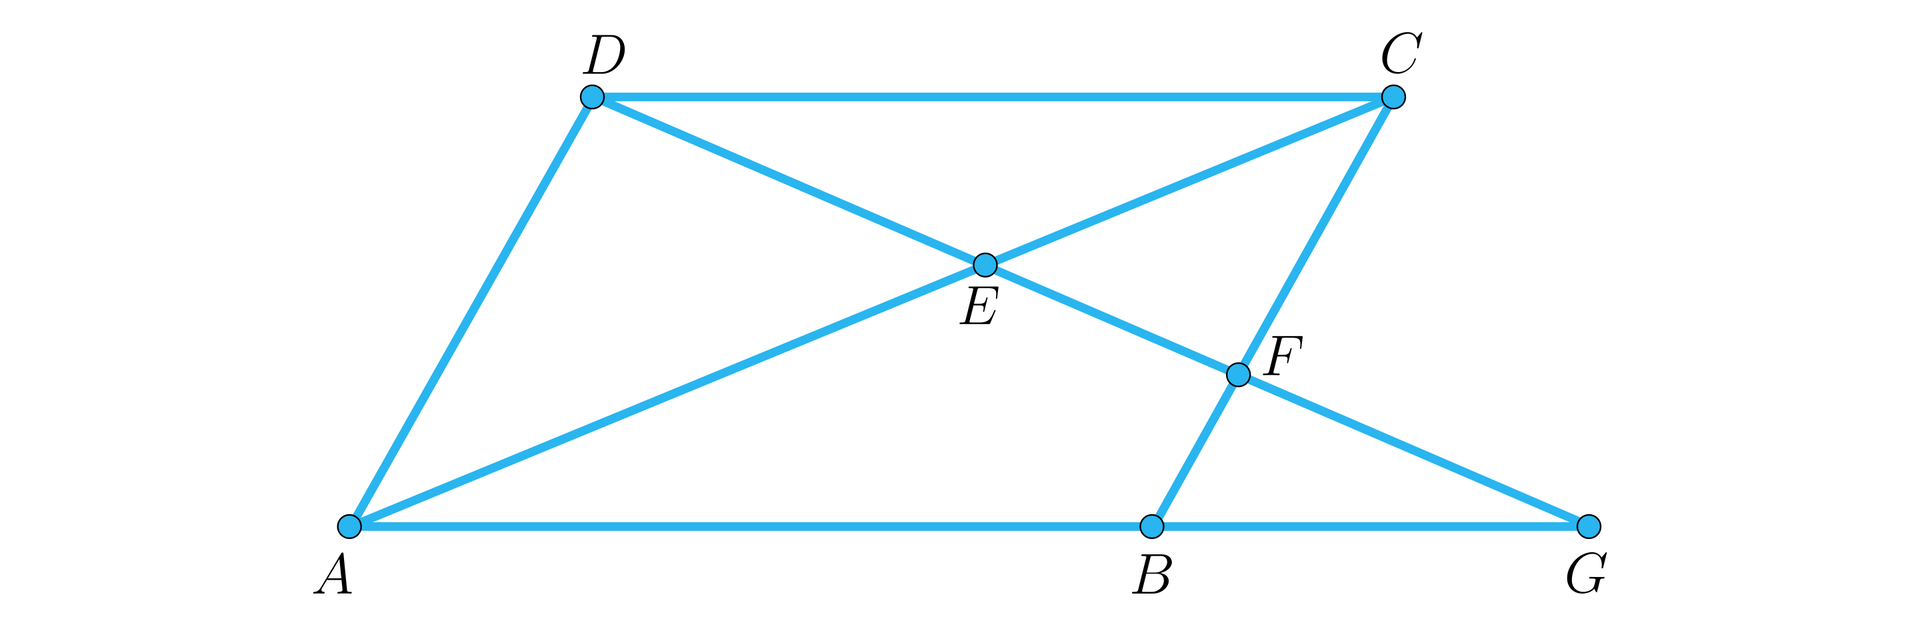 Ilustracja przedstawia równoległobok A B C D, w którym boki są następujące: A B to dolna pozioma podstawa, C D to górna pozioma podstawa, A D to ukośny lewy bok, B D to ukośny prawy bok. Podstawy są dłuższe od ukośnych boków. W czworokącie poprowadzono przekątną A  C. Dolną podstawę przedłużono o poziomy odcinek B G. Narysowano również ukośny odcinek D G. Odcinek ten przecina przekątną A C w punkcie E oraz bok B C w punkcie F.